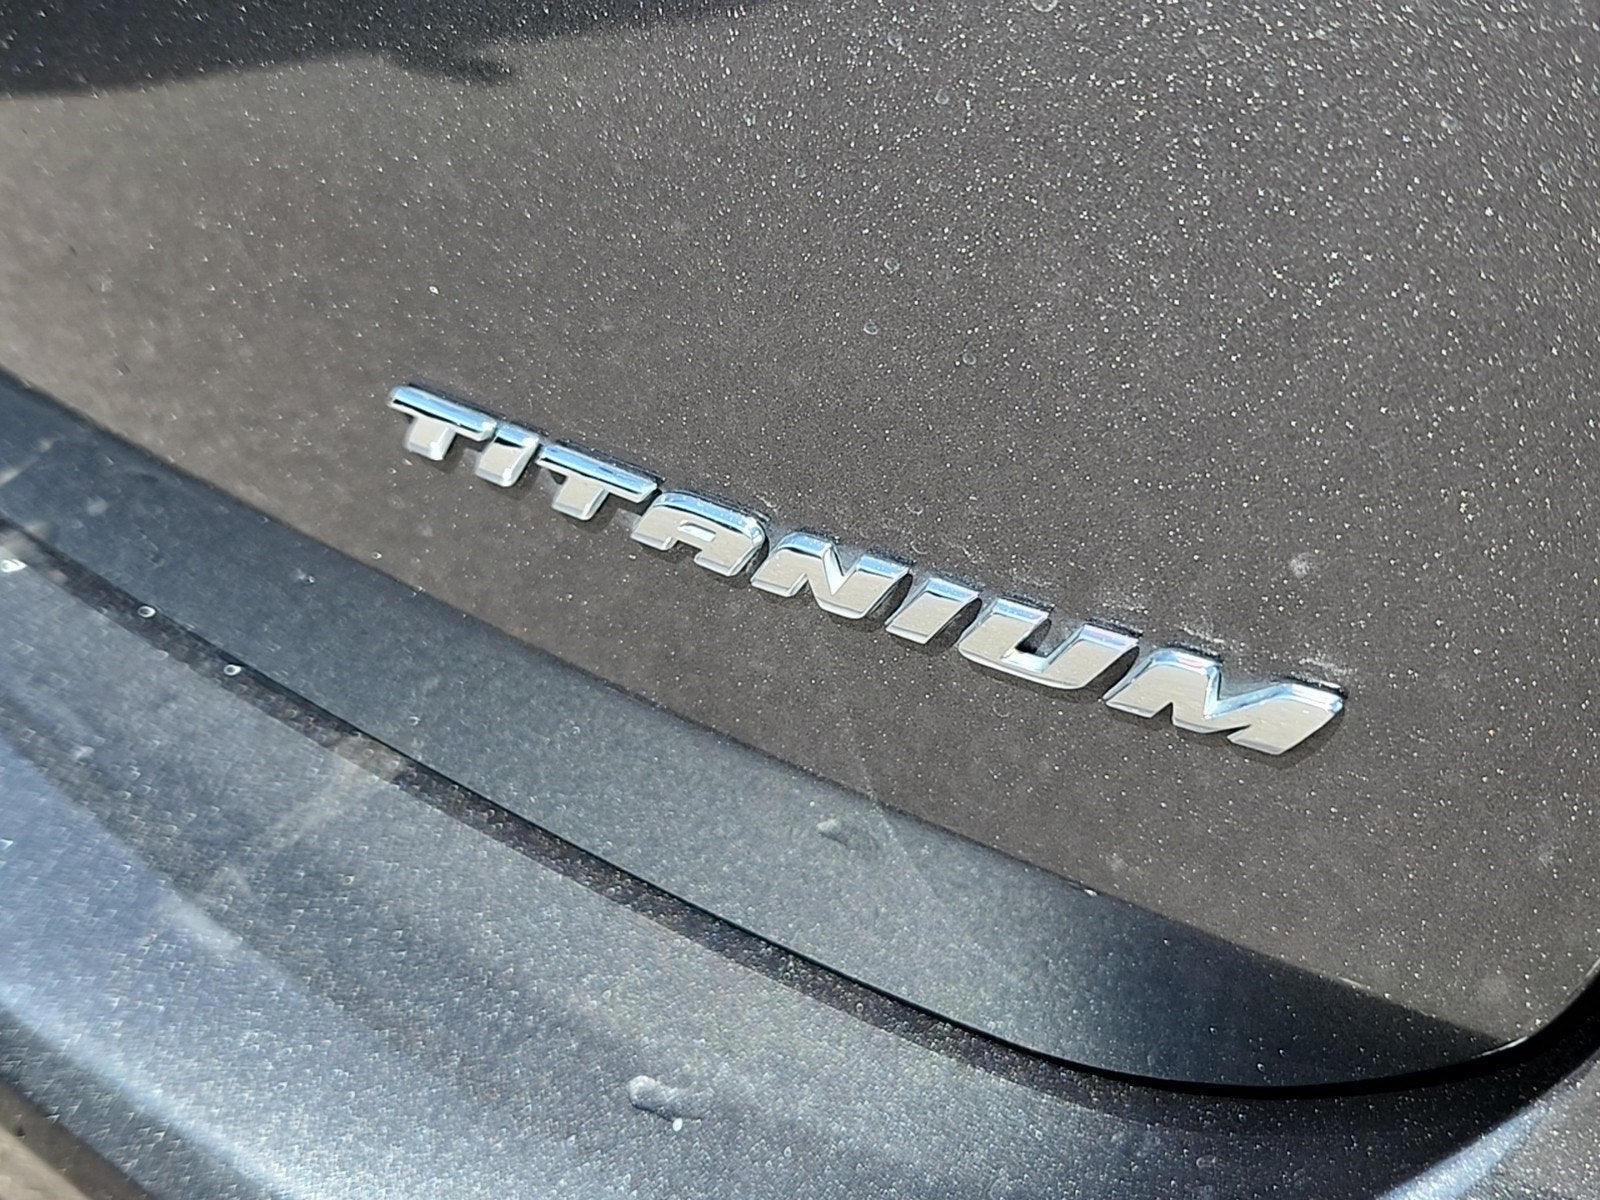 2017 Ford C-Max Energi Titanium